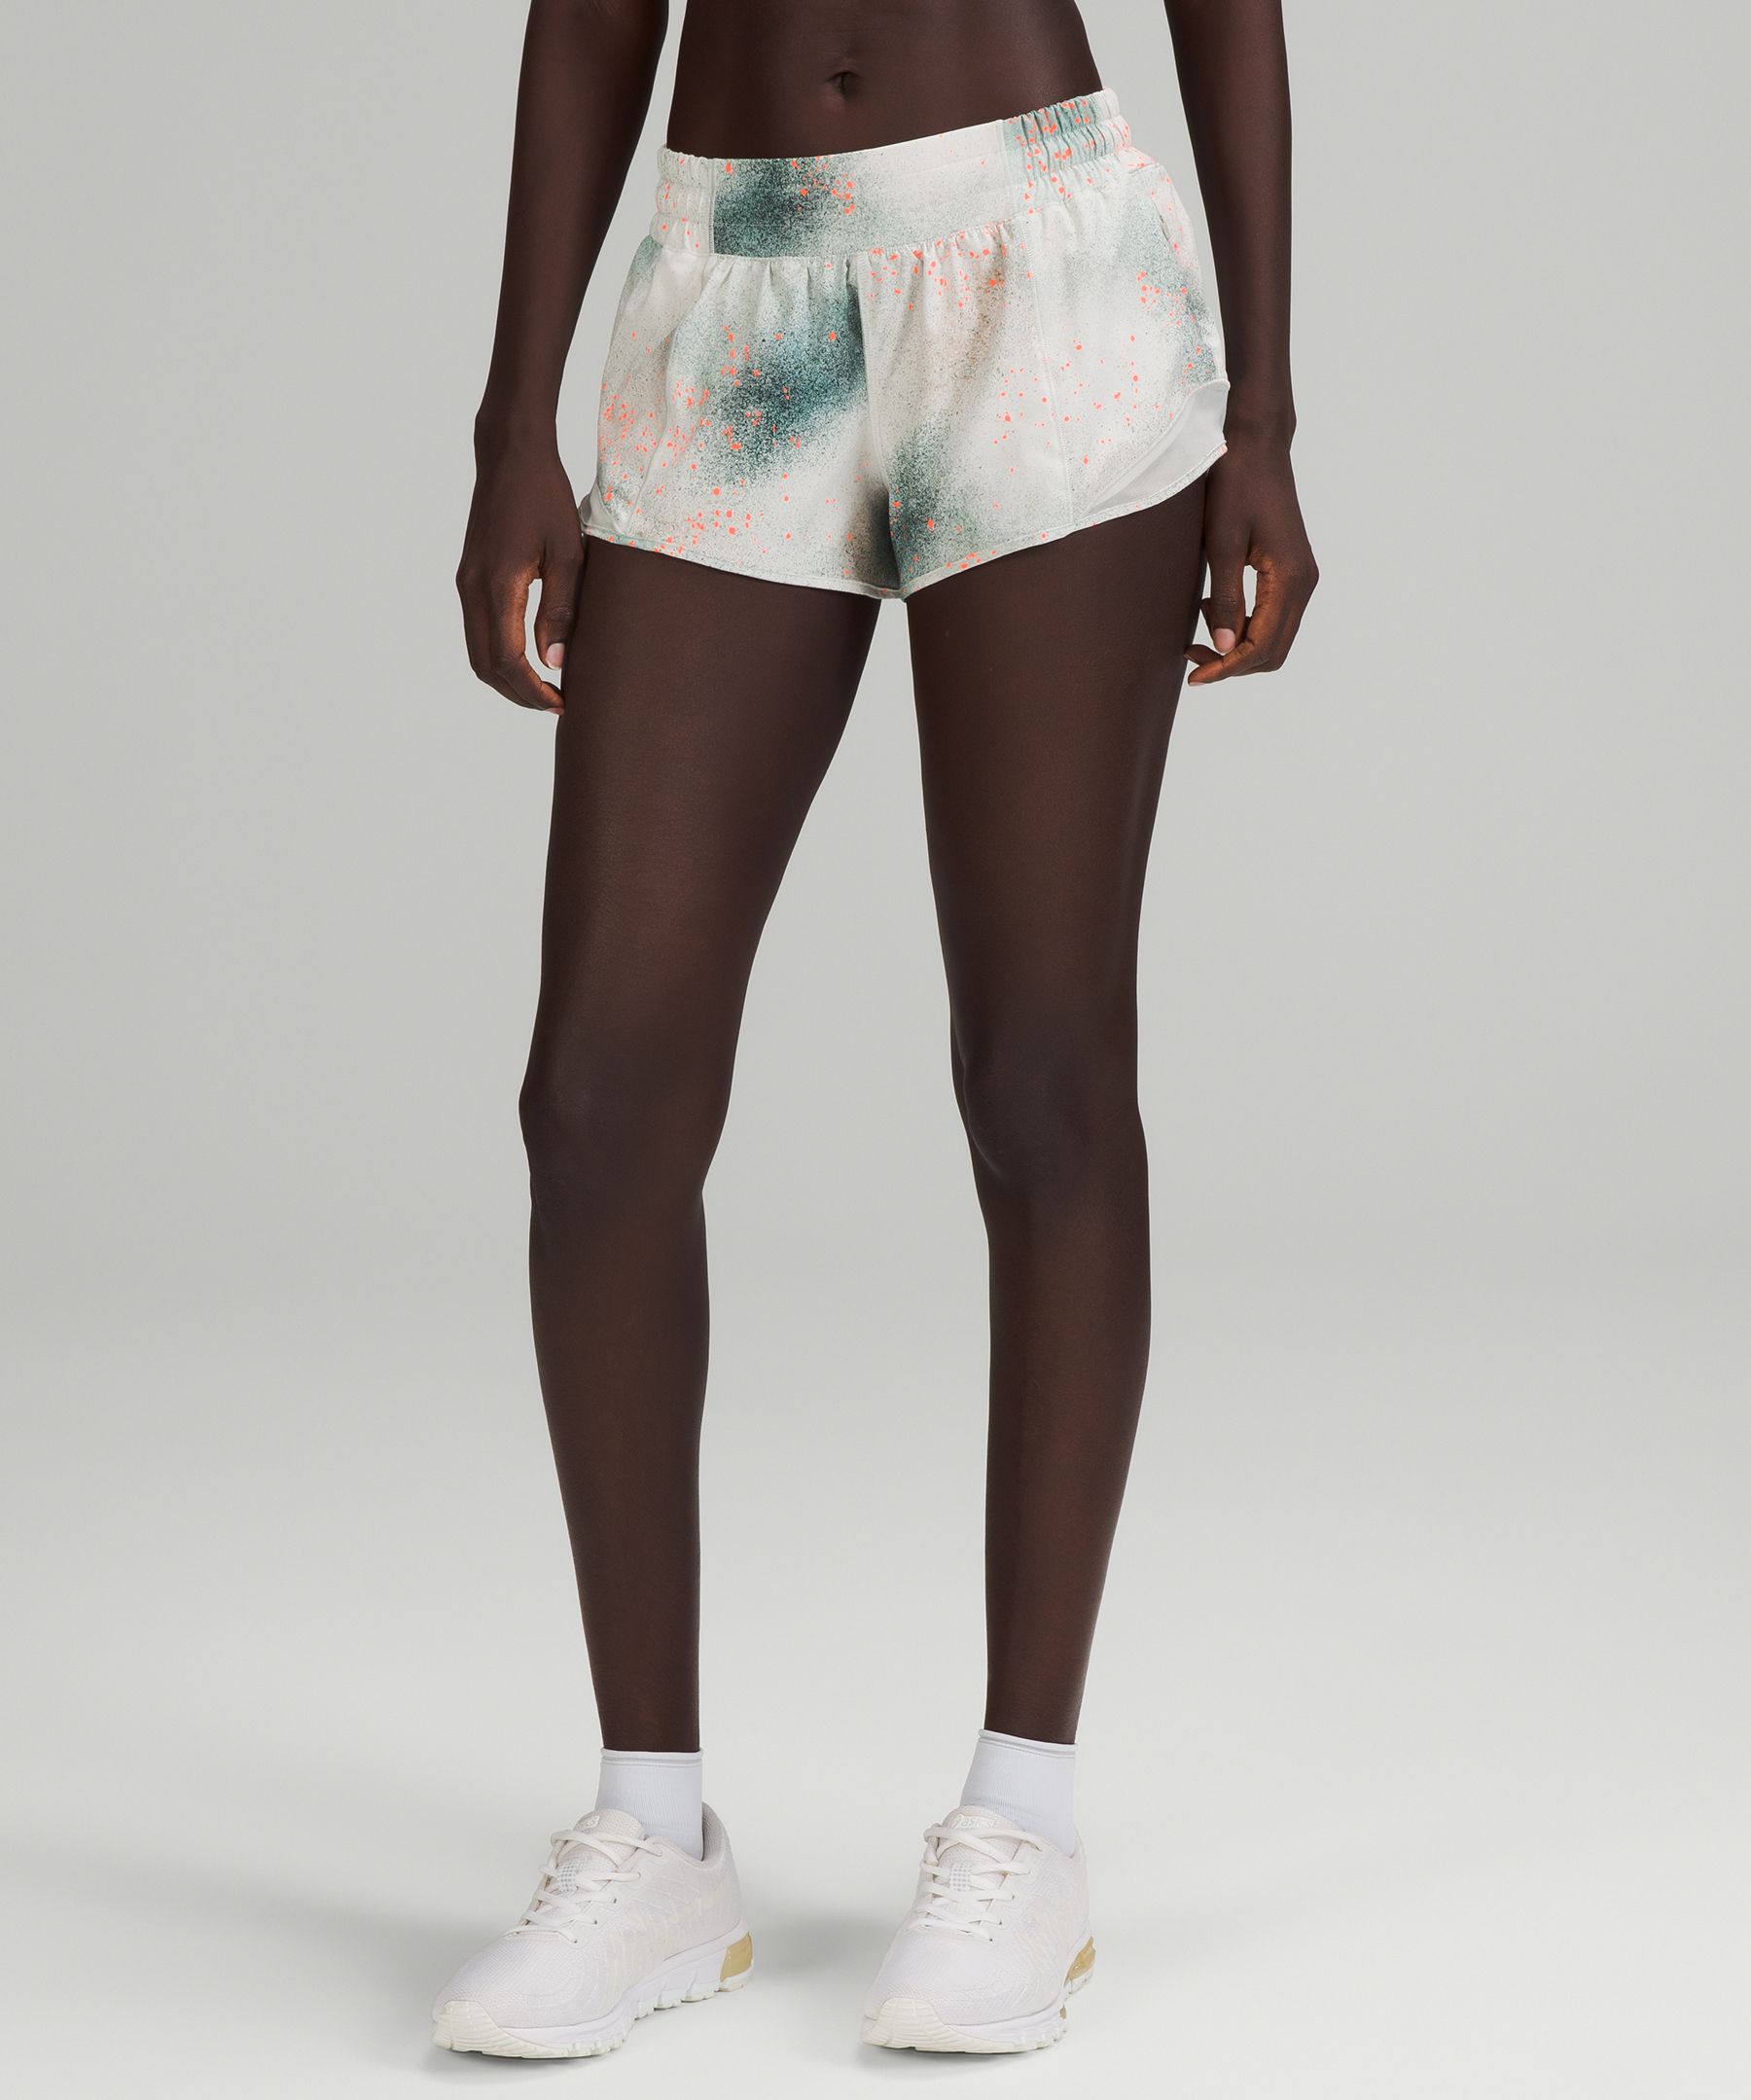 Lululemon Hotty Hot Low-rise Lined Shorts 2.5" Reflective